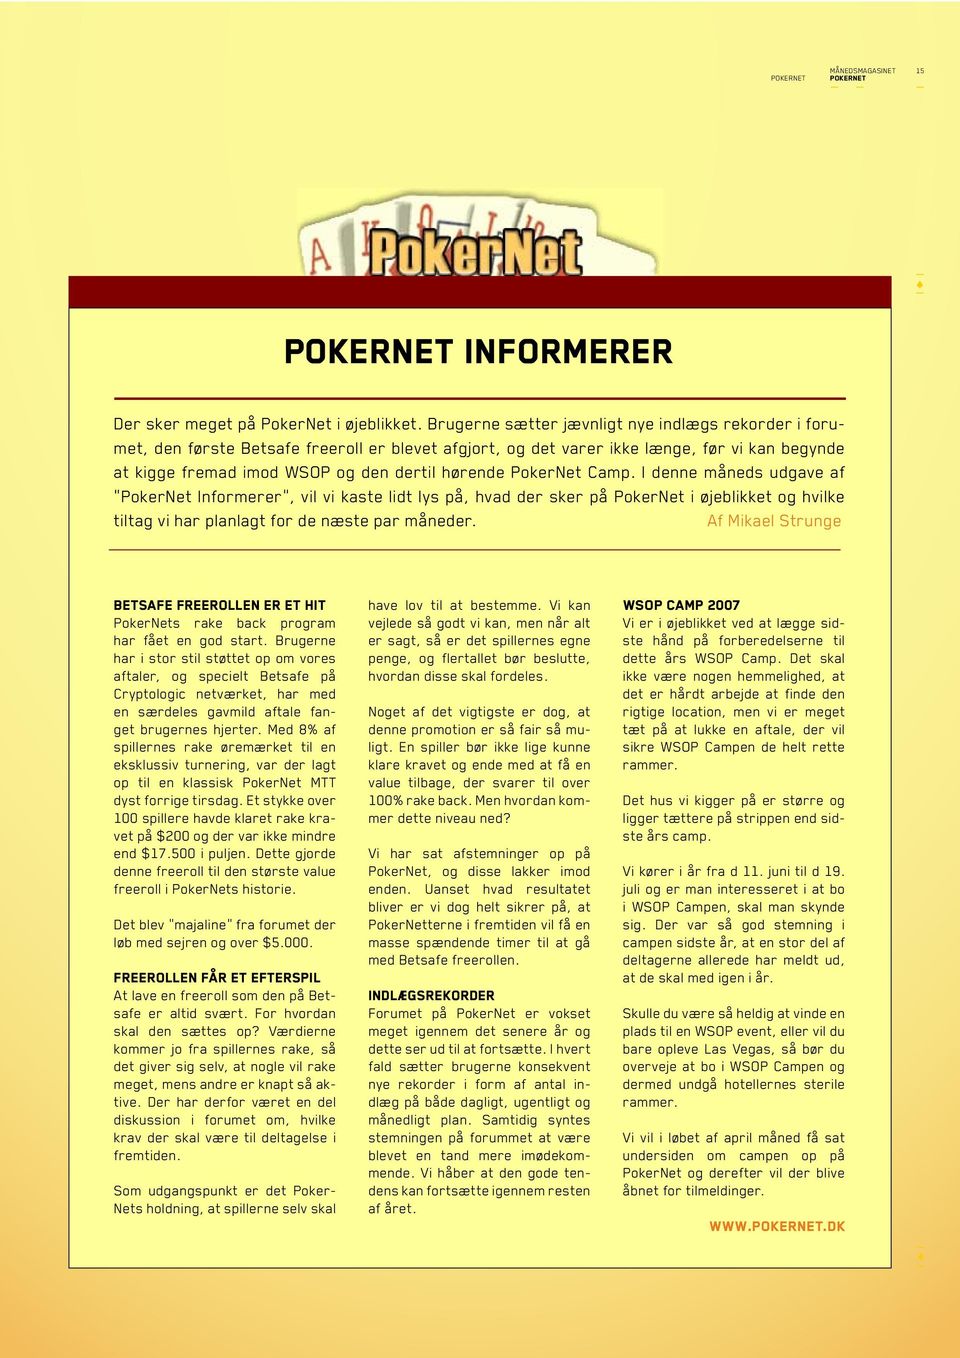 PokerNet Camp. I denne måneds udgave af PokerNet Informerer, vil vi kaste lidt lys på, hvad der sker på PokerNet i øjeblikket og hvilke tiltag vi har planlagt for de næste par måneder.